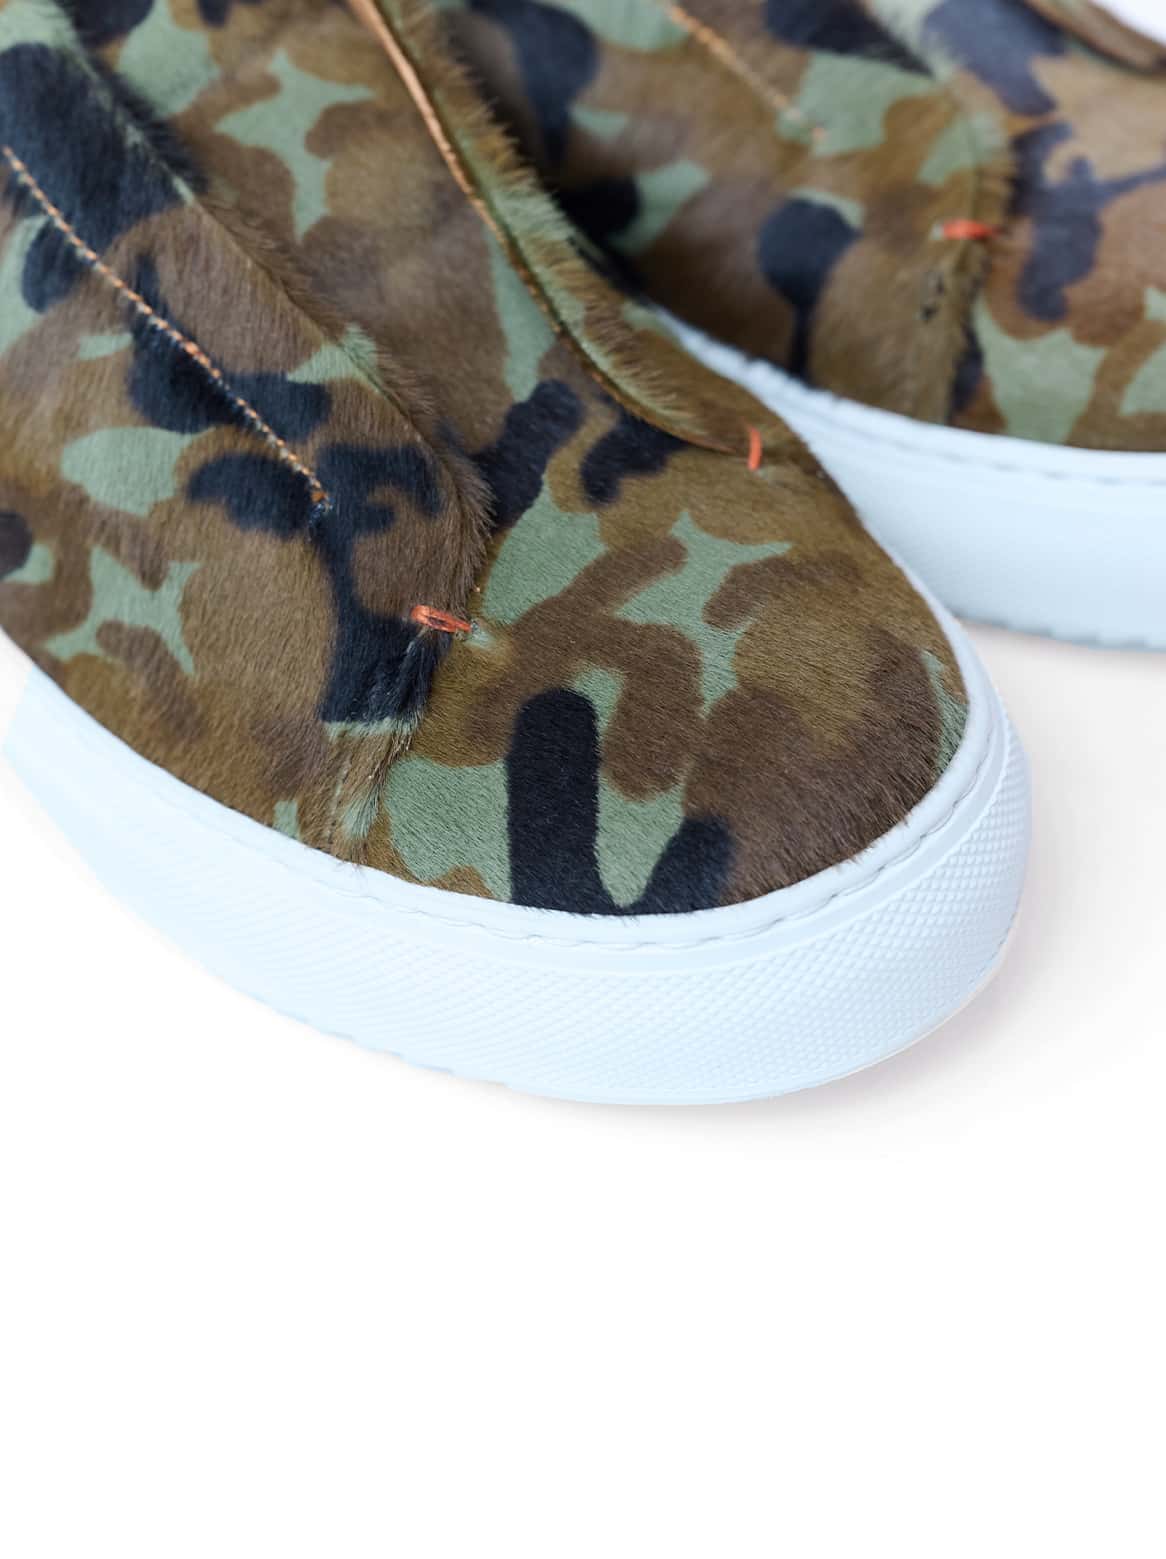 Slip-In Sneaker Camouflage